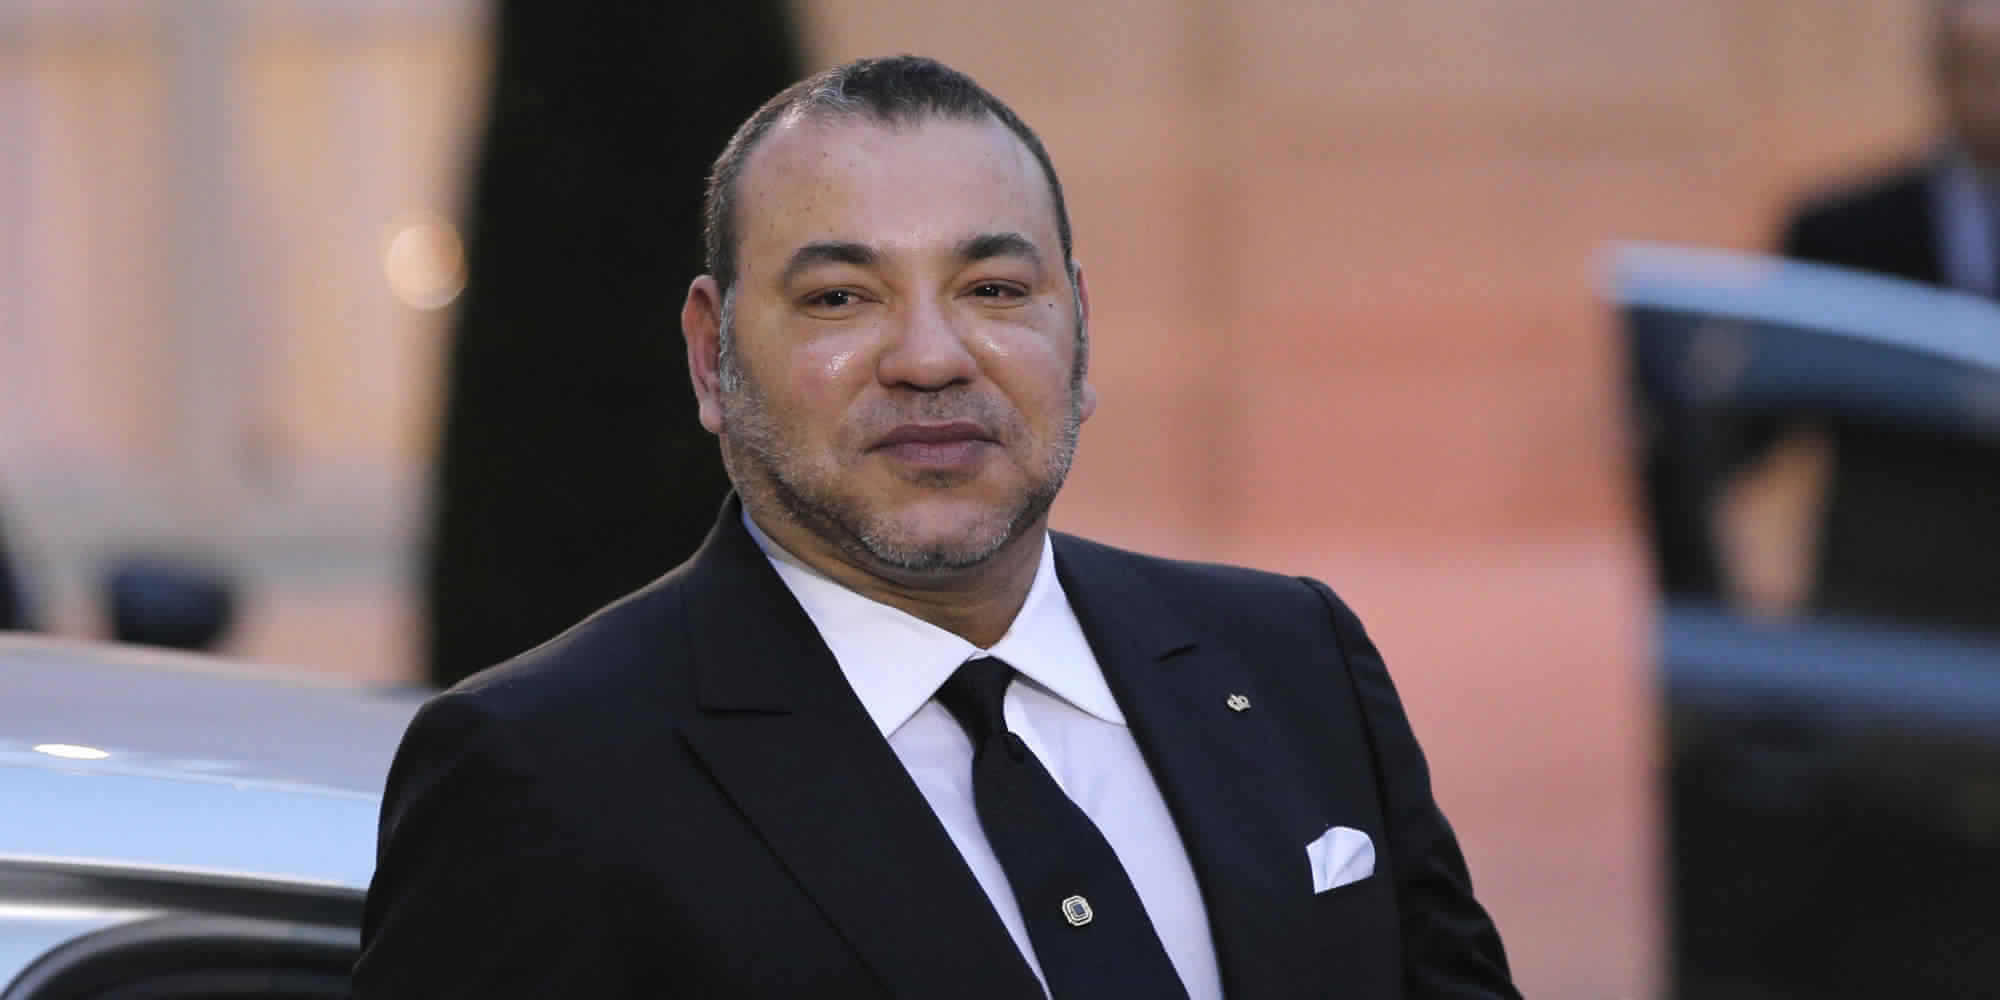 جلالة الملك يسند رئاسة لجنة ترشيح المغرب لتنظيم مونديال 2026 إلى حفيظ العلمي